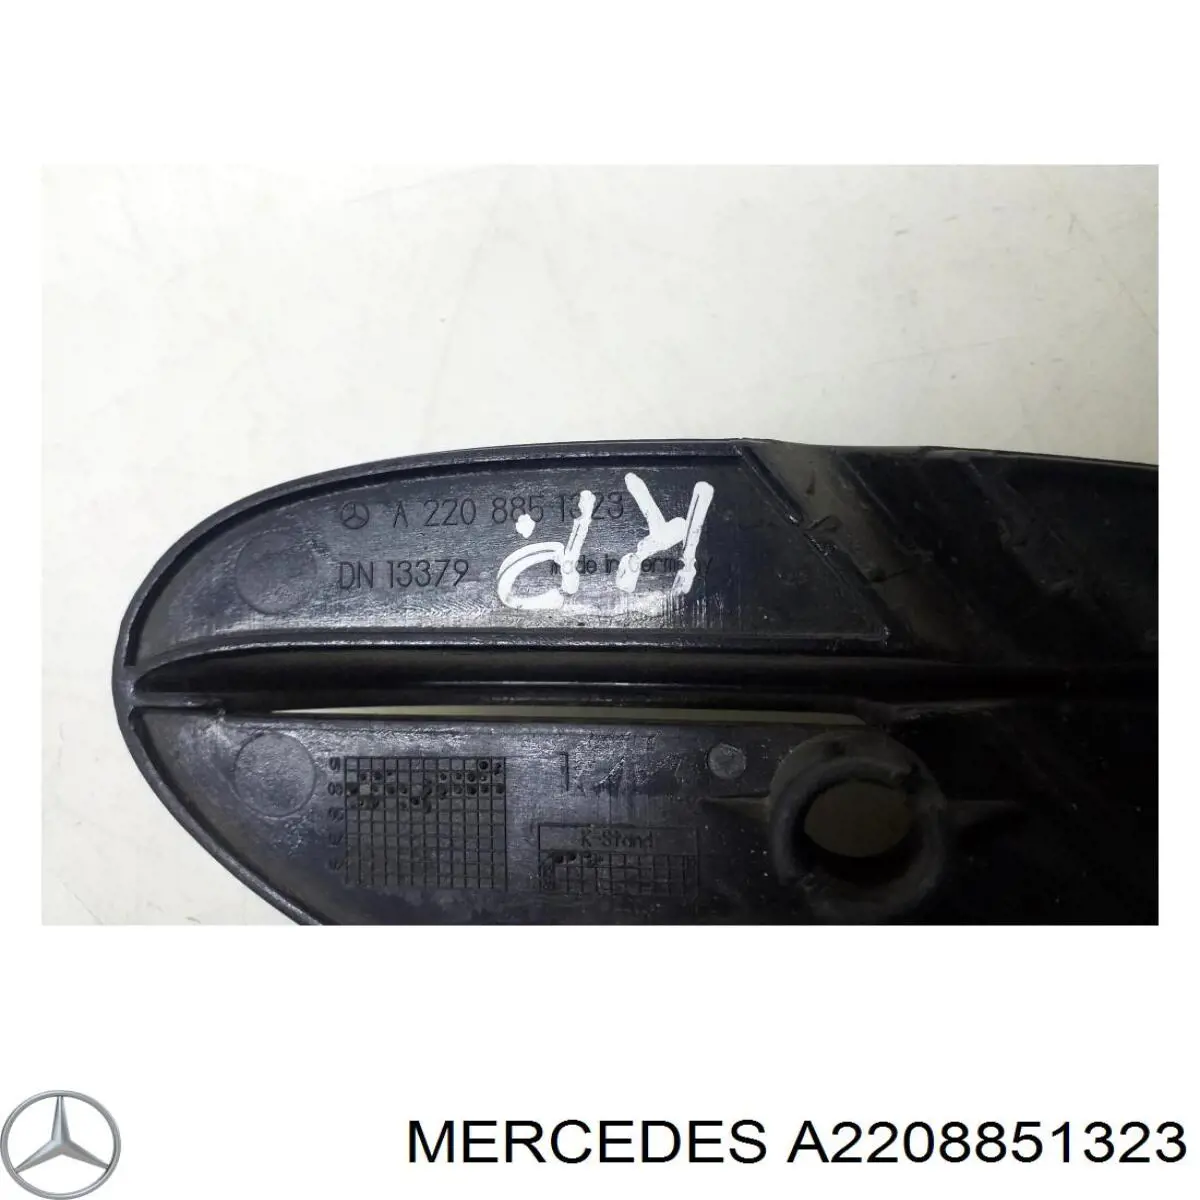 2208851323 Mercedes rejilla de ventilación, parachoques trasero, izquierda